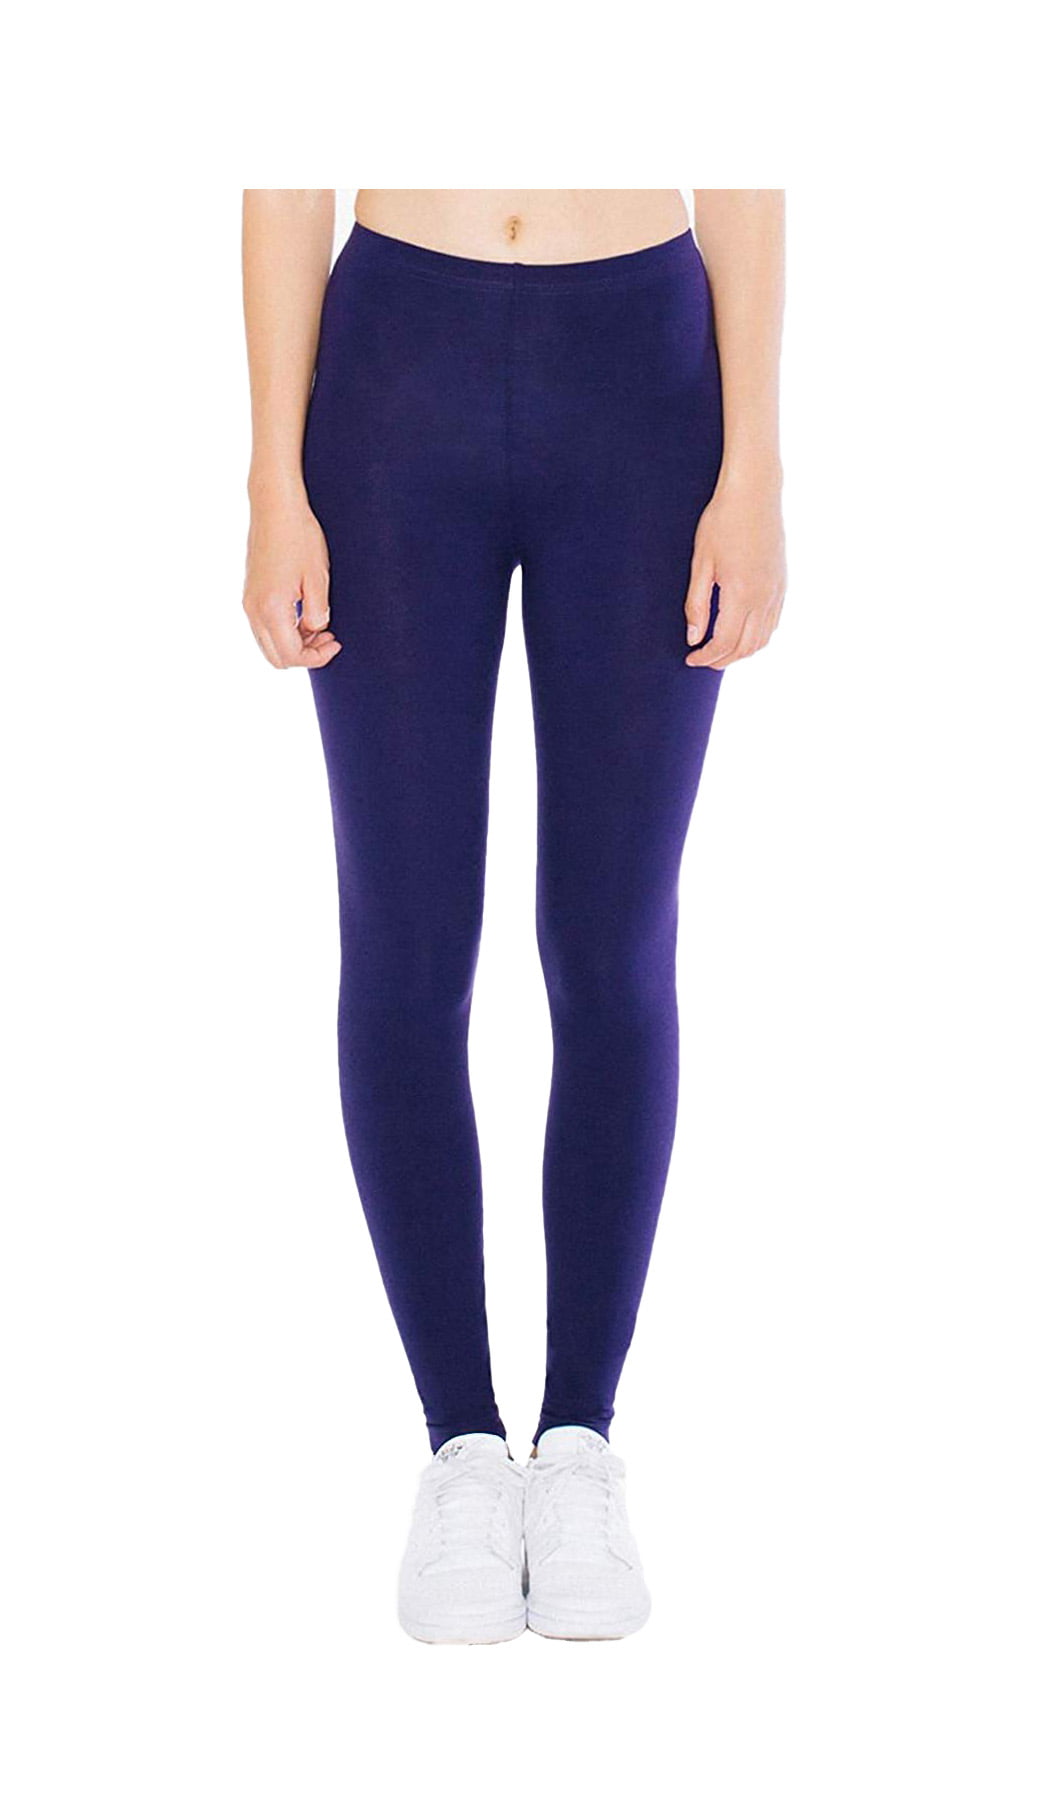 American Apparel Women's leggings Cotton Spandex Jersey gym/yoga pants 8328 